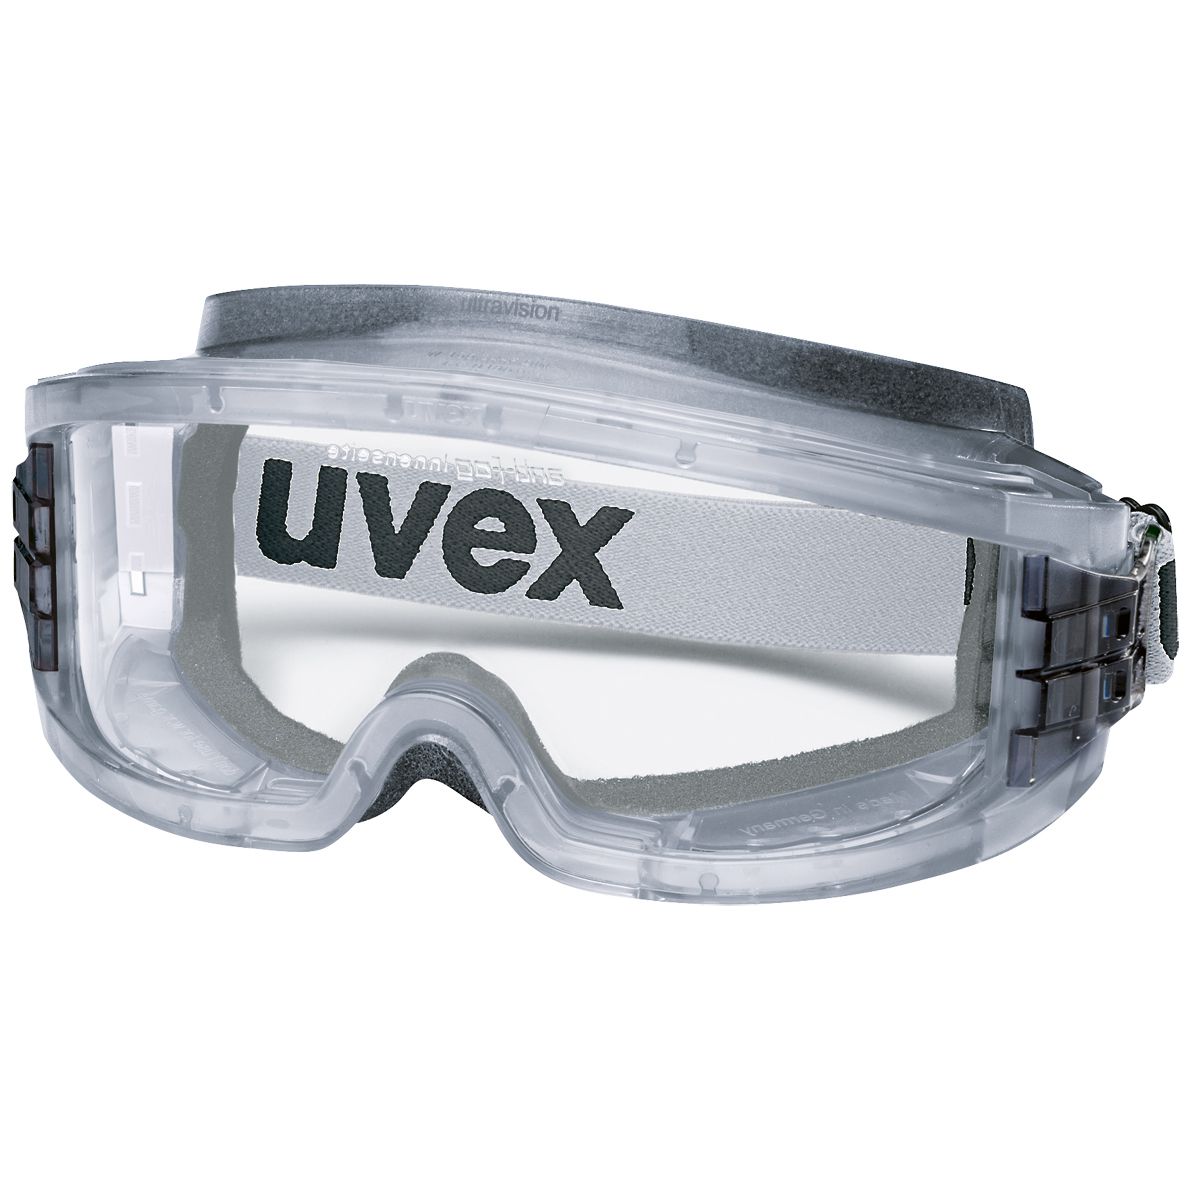 Uvex Vollsichtbrille 9301 ultravision, grau-transparent, Scheibe: farblos, Schutz: 2-1,2, Oil & Gas